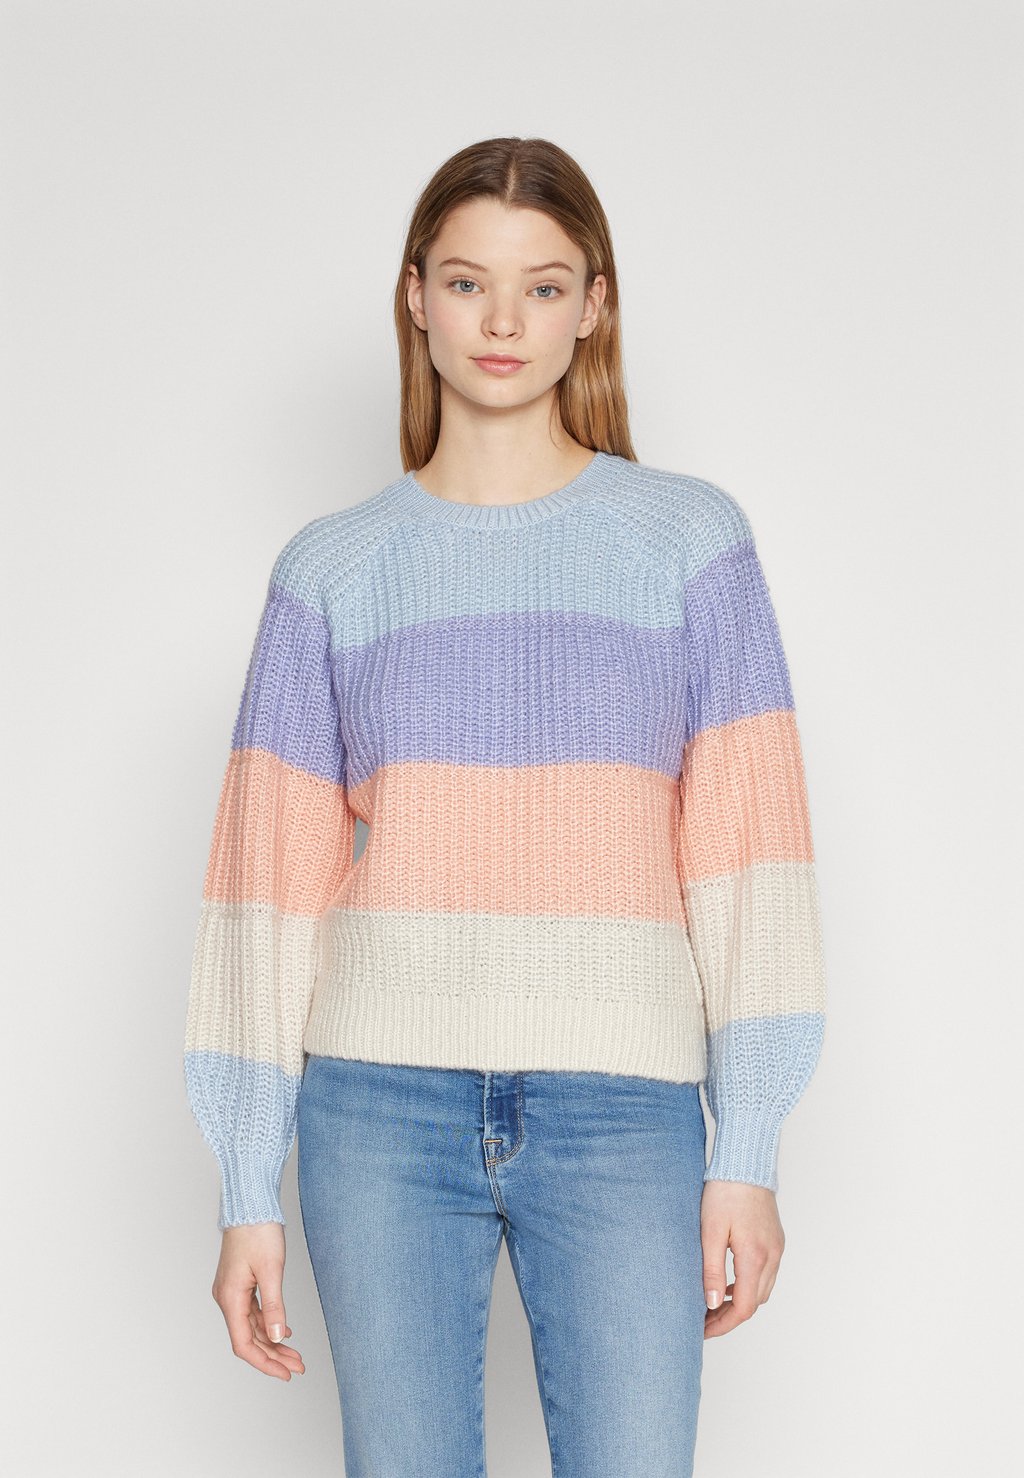 Вязаный свитер VILAILA O-NECK RAGLAN TOP, цвет kentucky blue detail/sweet lavender/coral/white sand полупрозрачный ажурный халат sweet retreat white xl